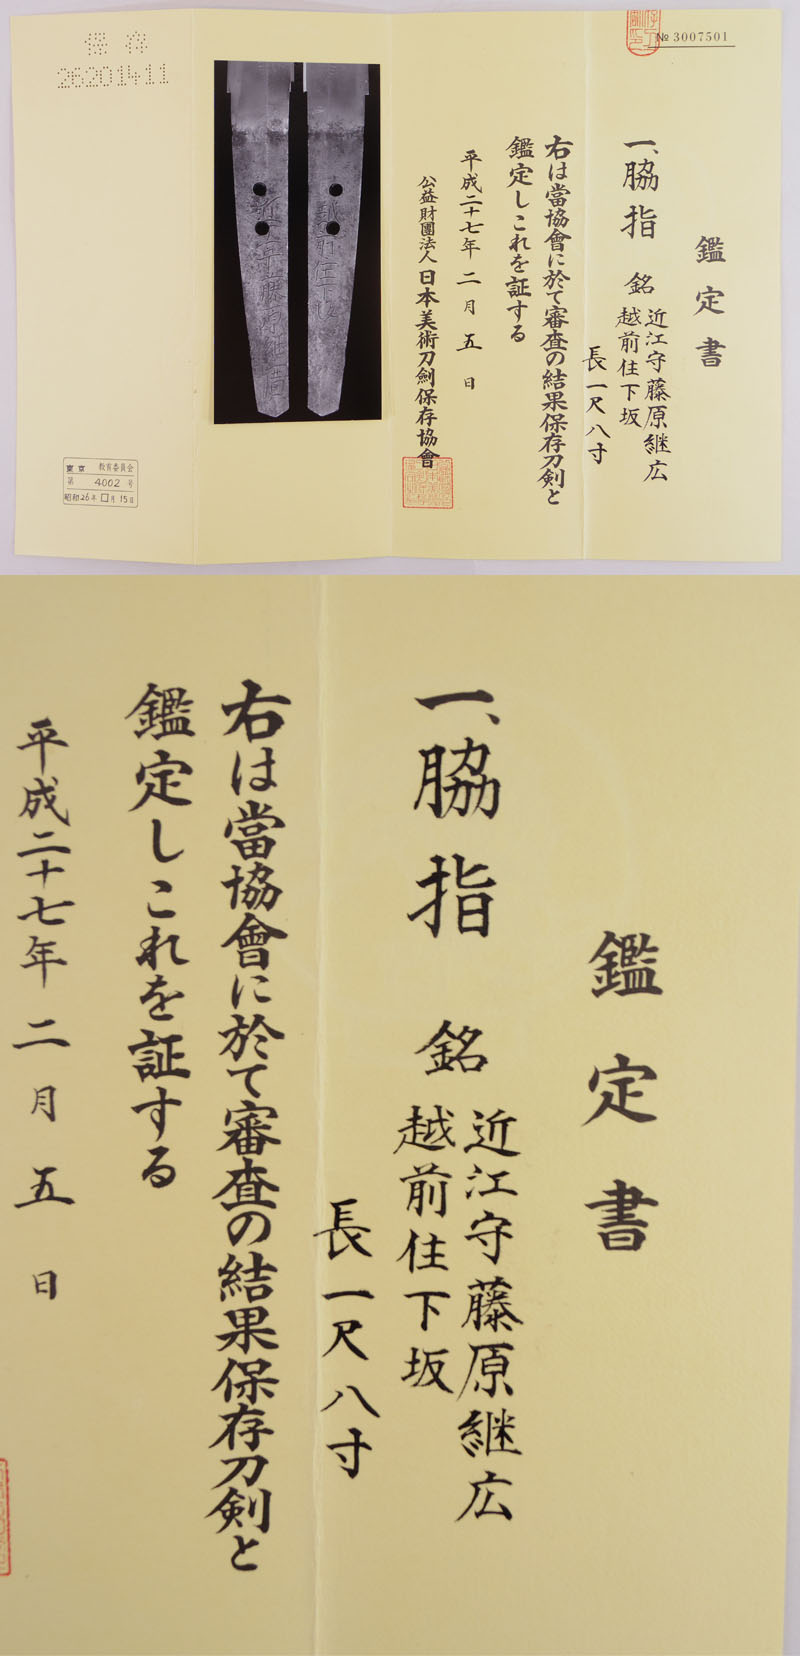 脇差　近江守藤原継広 (業物)　　　越前住下坂 Picture of Certificate